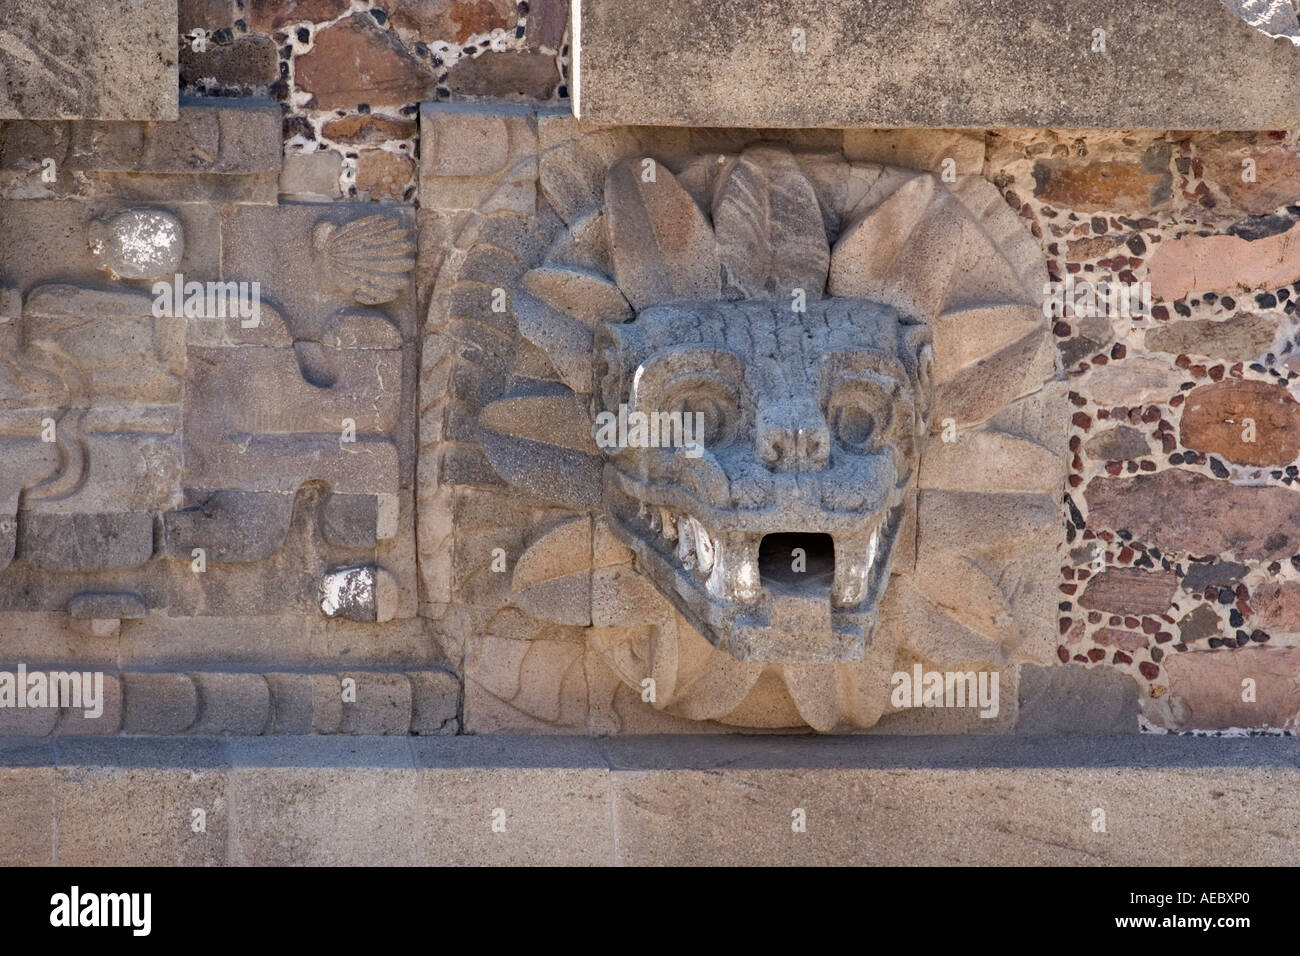 Dettaglio del serpente piumato Piramide (Città del Messico - Messico). Détail De La Pyramide du Serpent à plumes (Messico - Mexique). Foto Stock